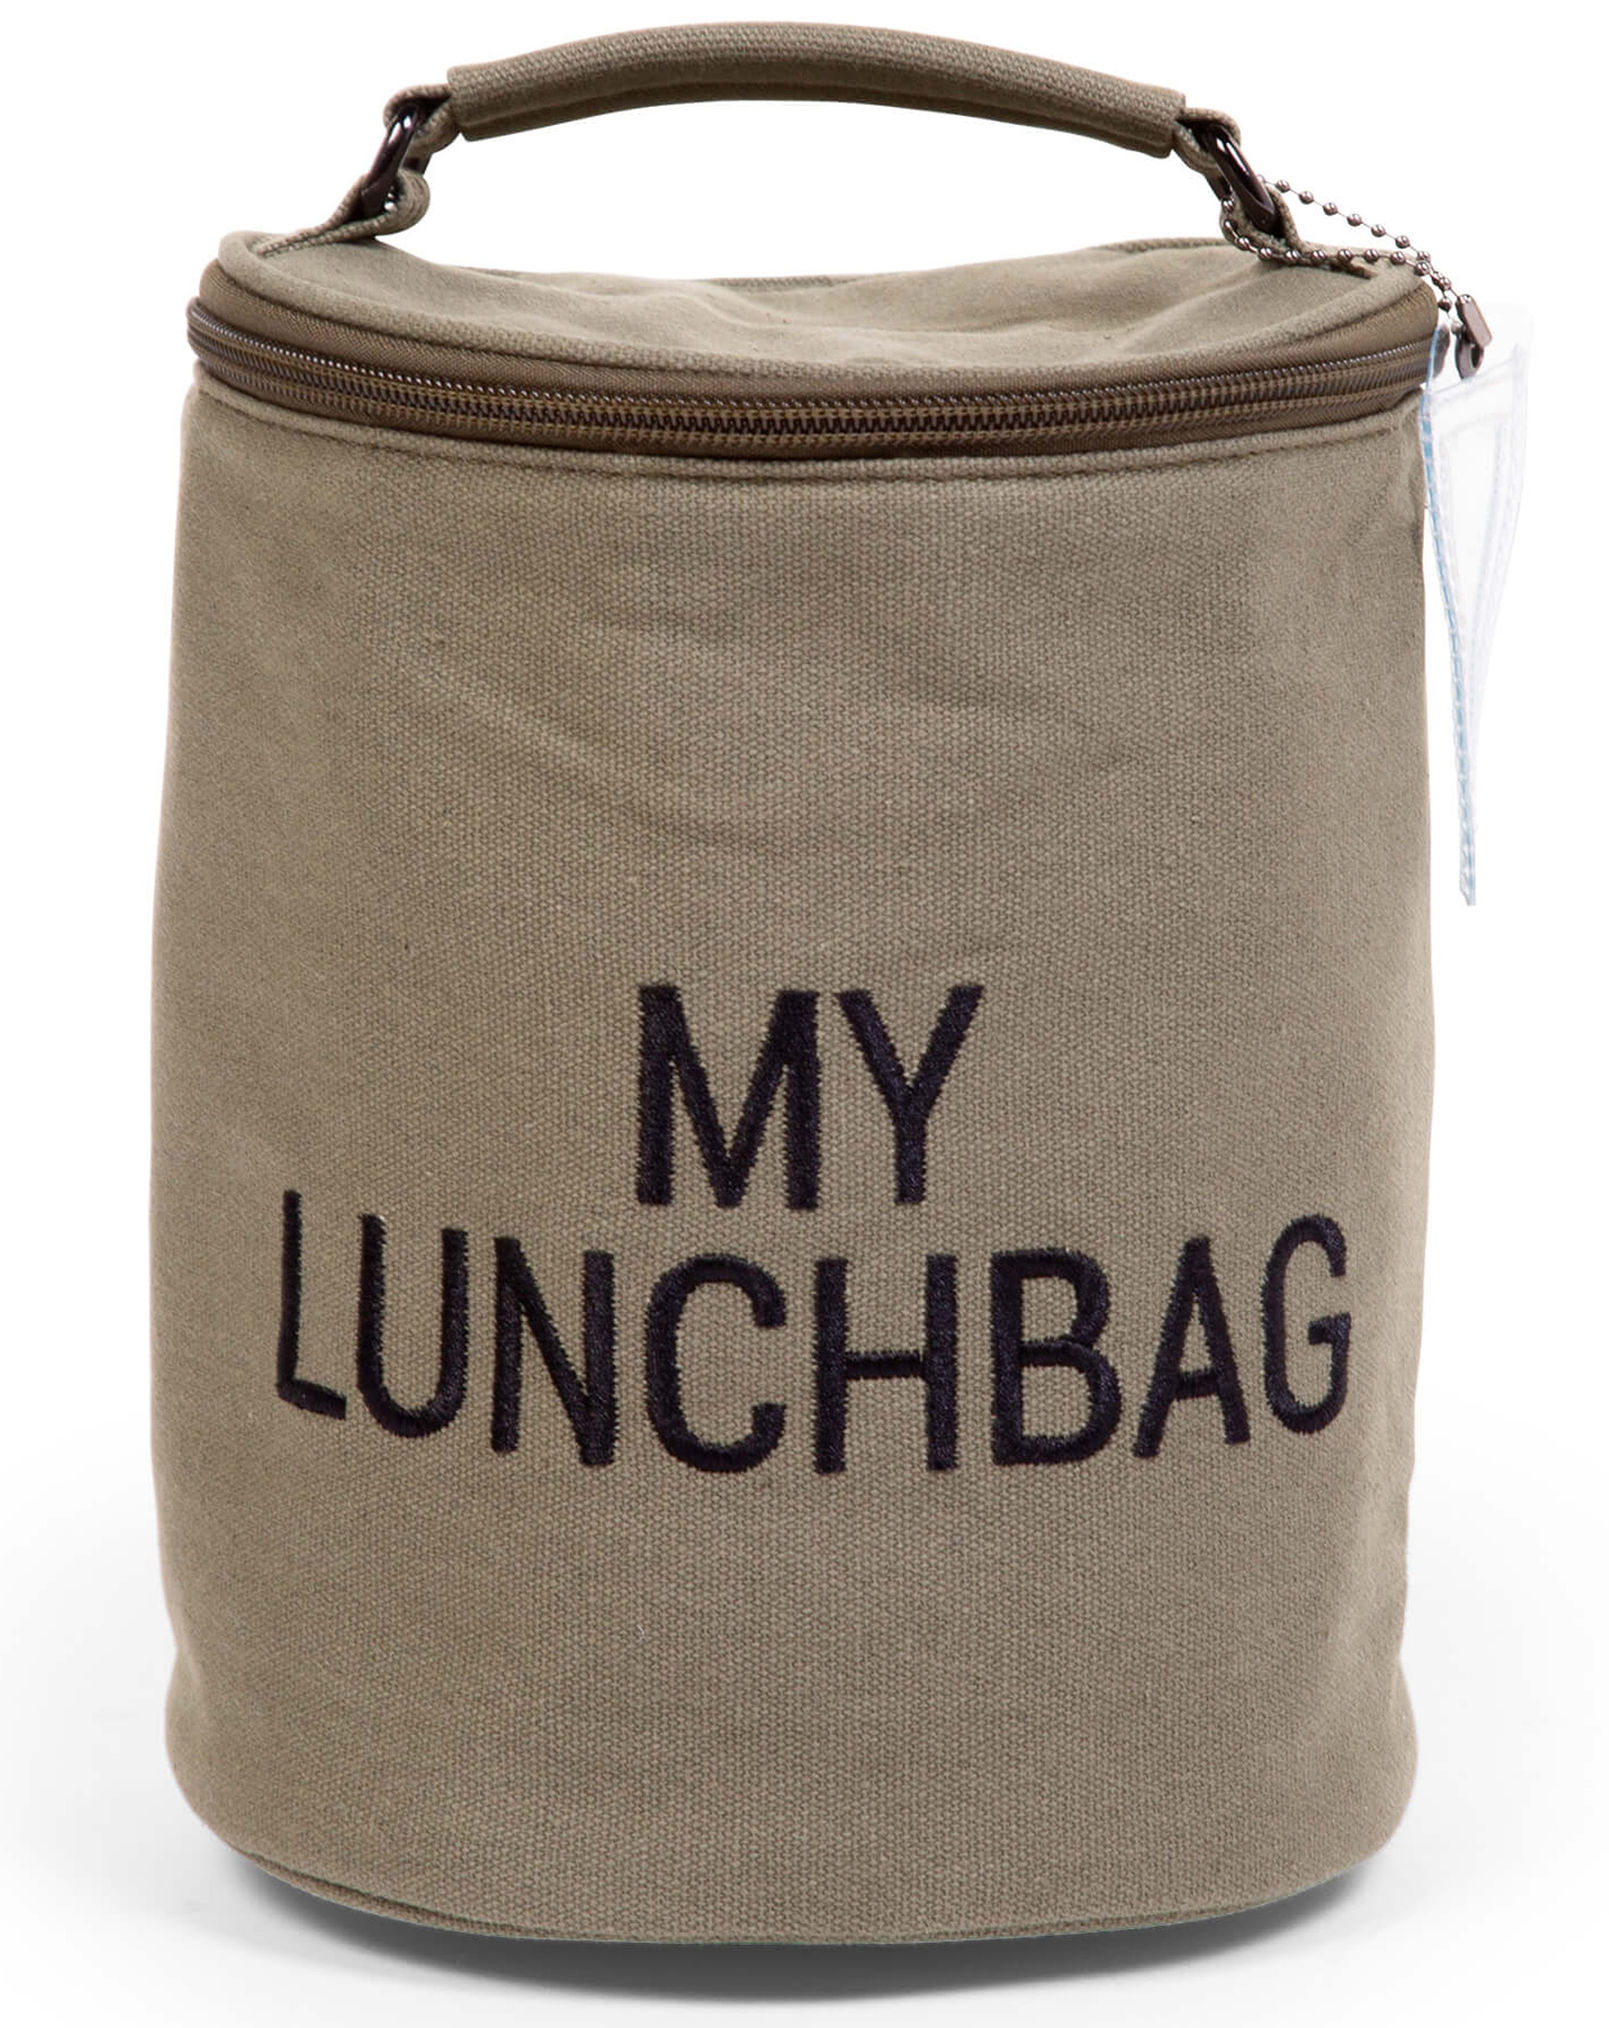 Kühltasche Lunchbag 